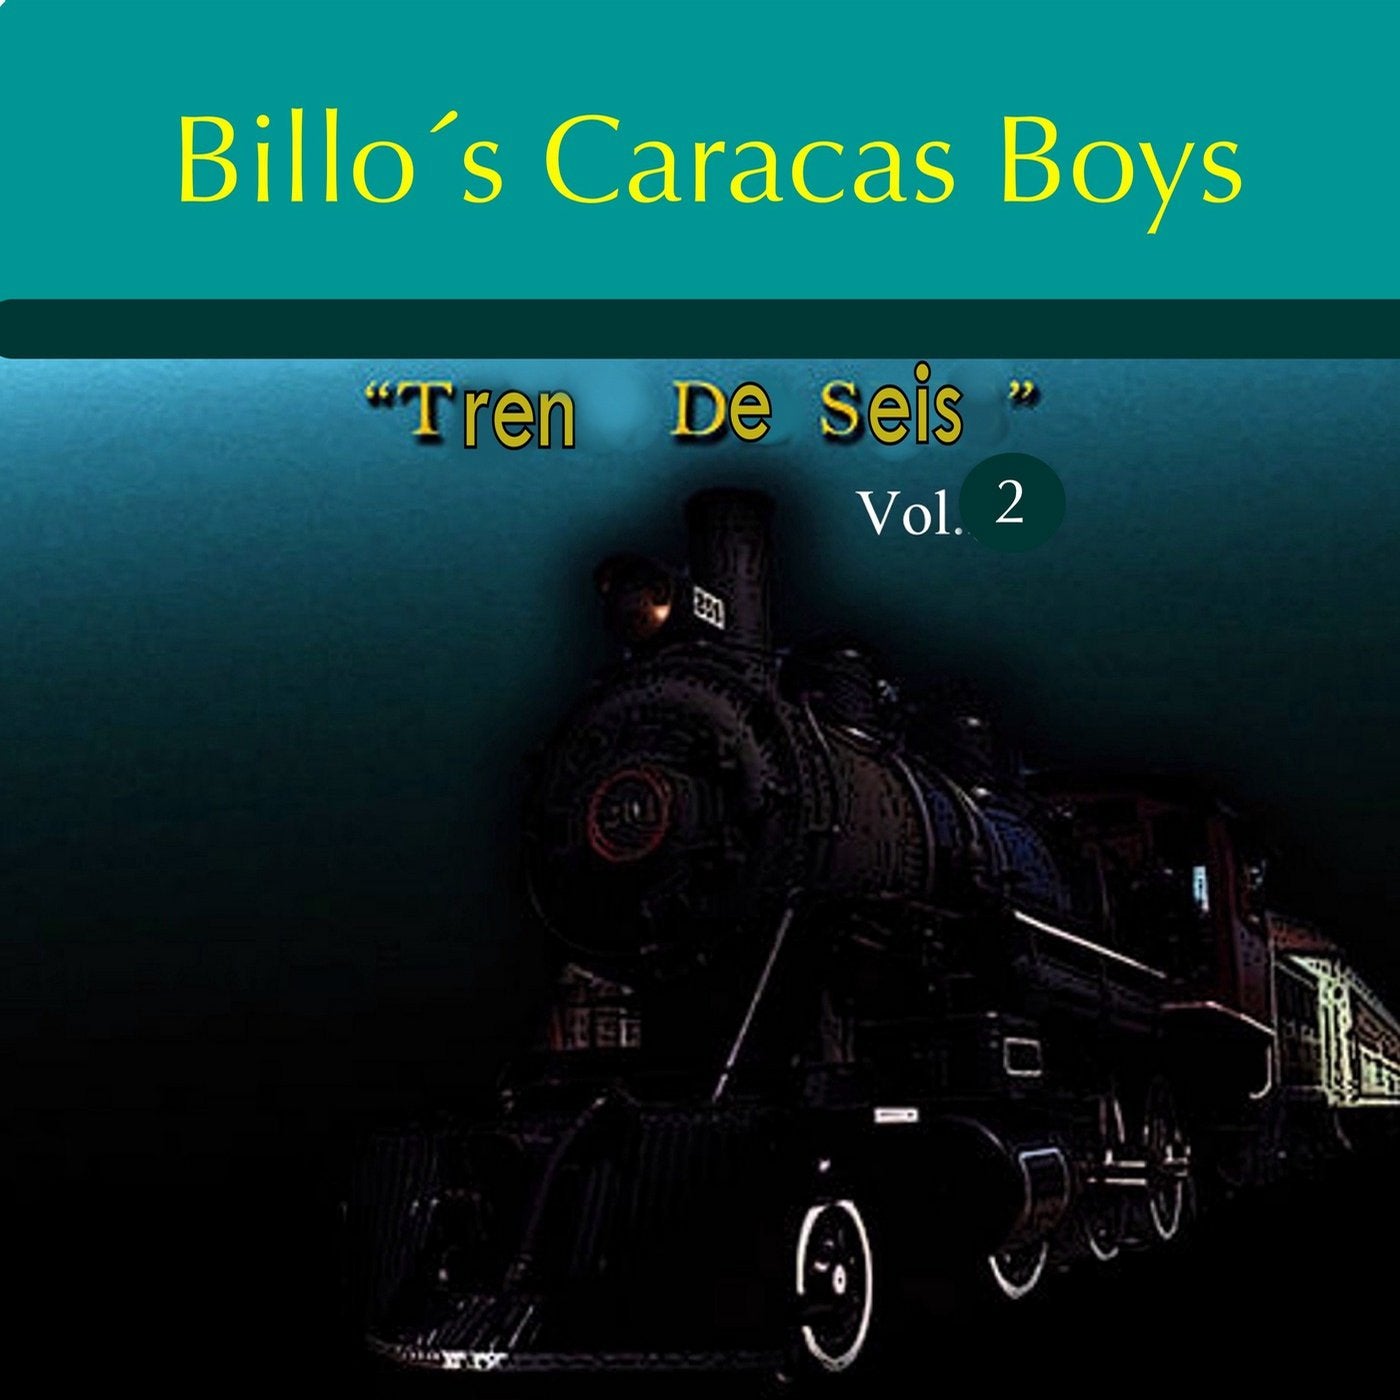 Mosaico 35: Por Eso No Debes / Mi Ropa / Tu Boca / Oiga Cantinero ( Original Mix) by Billo's Caracas Boys on Beatport